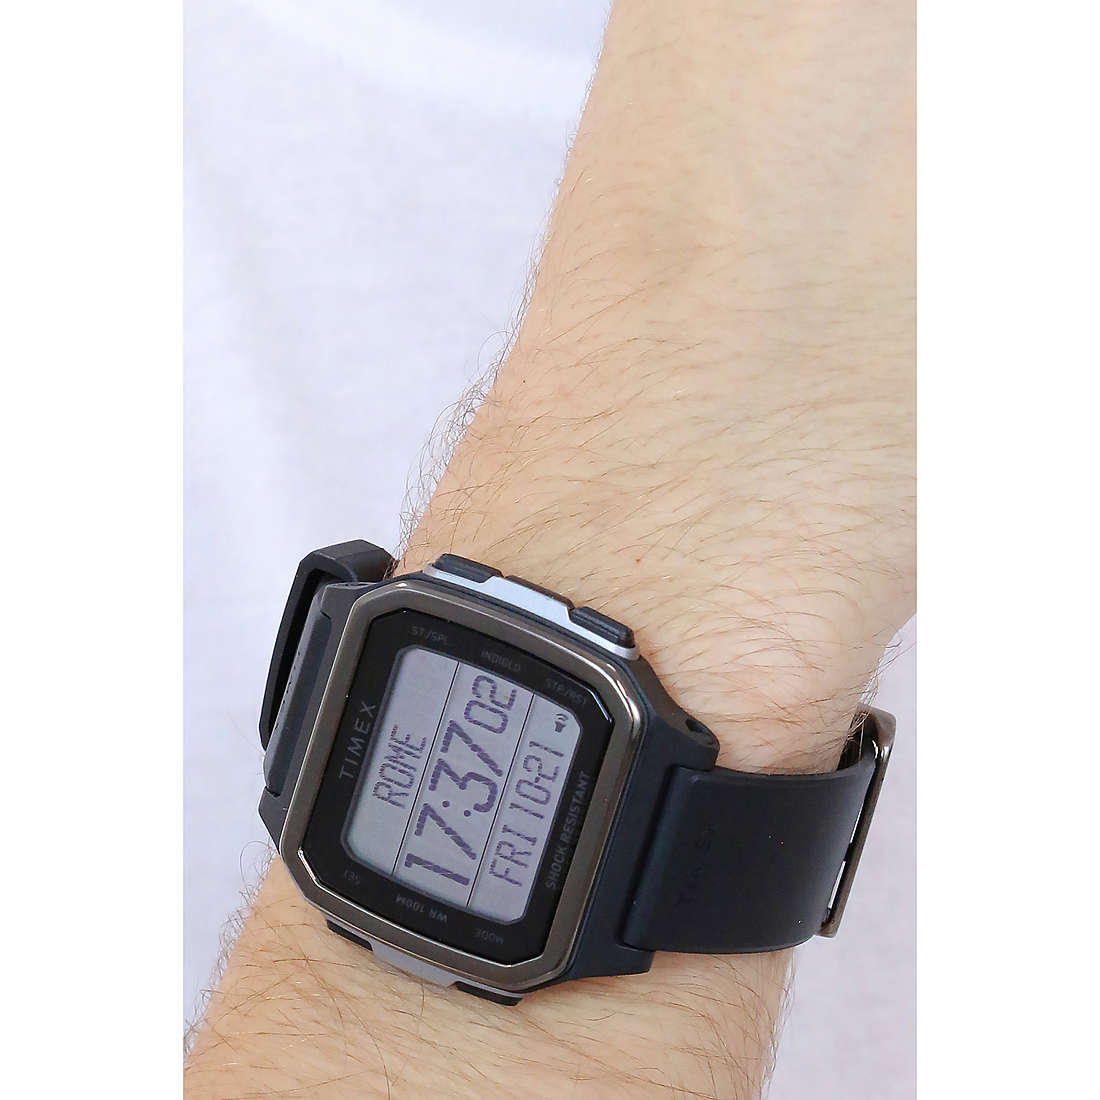 Timex digitals Shibuya man TW5M29000SU wearing